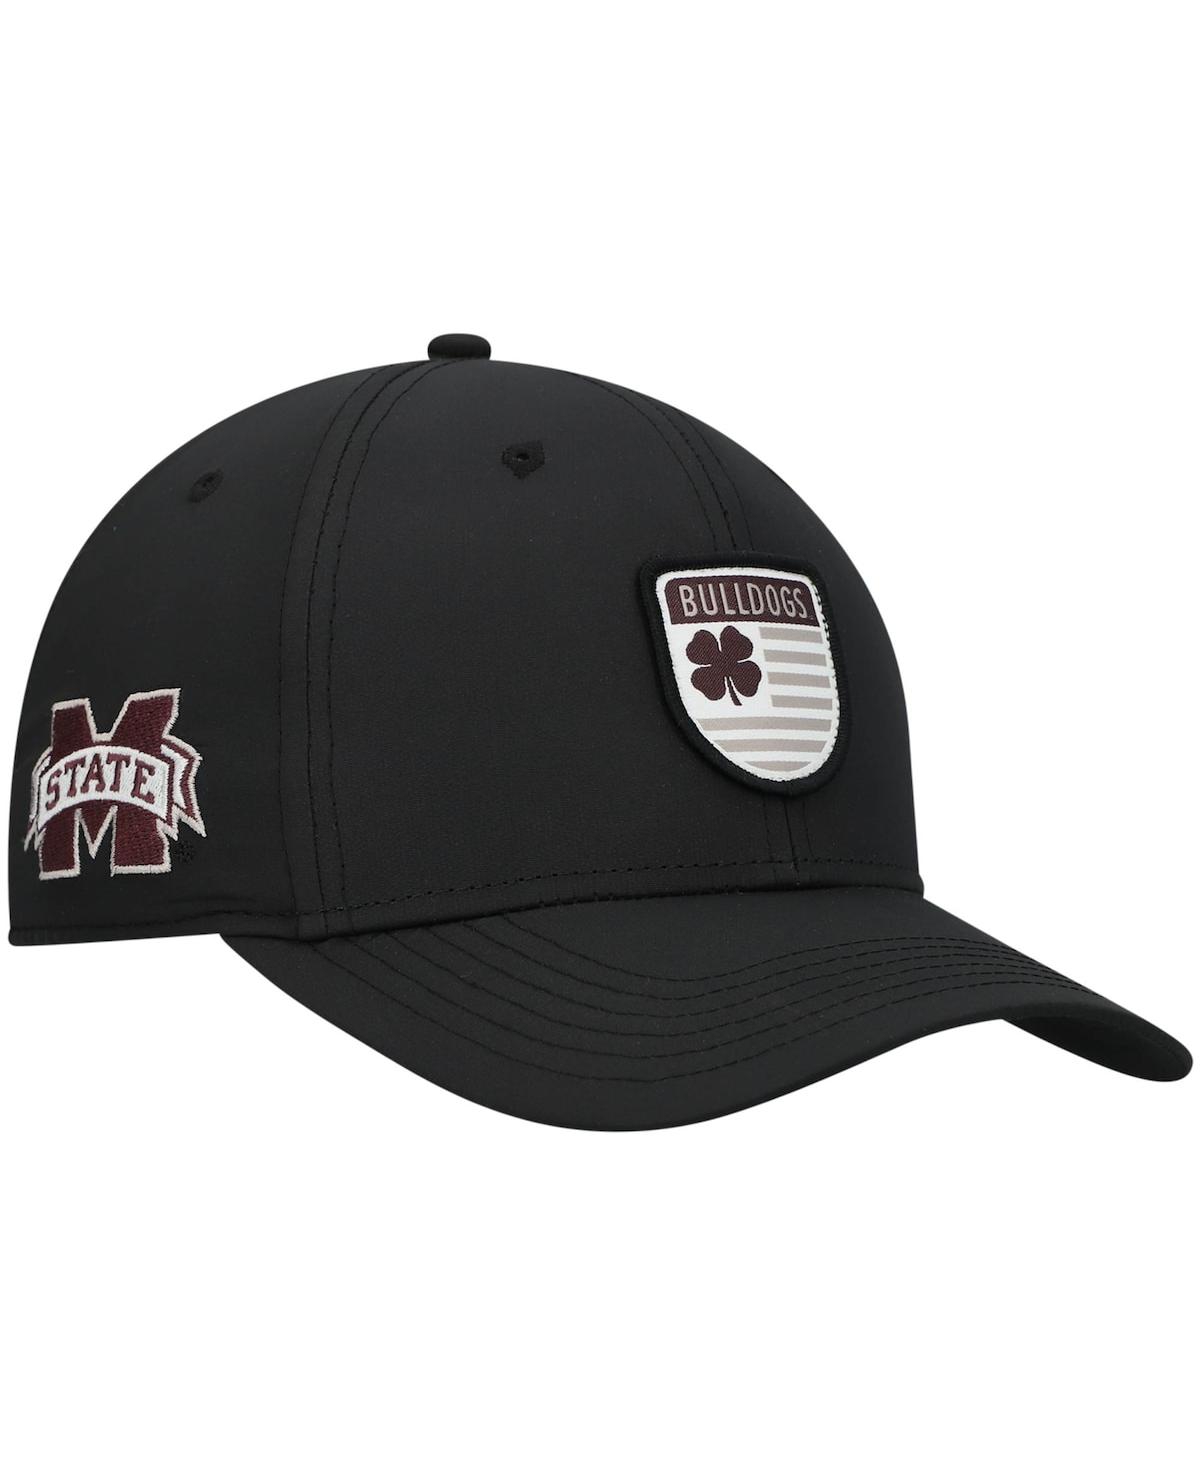 Shop Black Clover Men's Black Mississippi State Bulldogs Nation Shield Snapback Hat